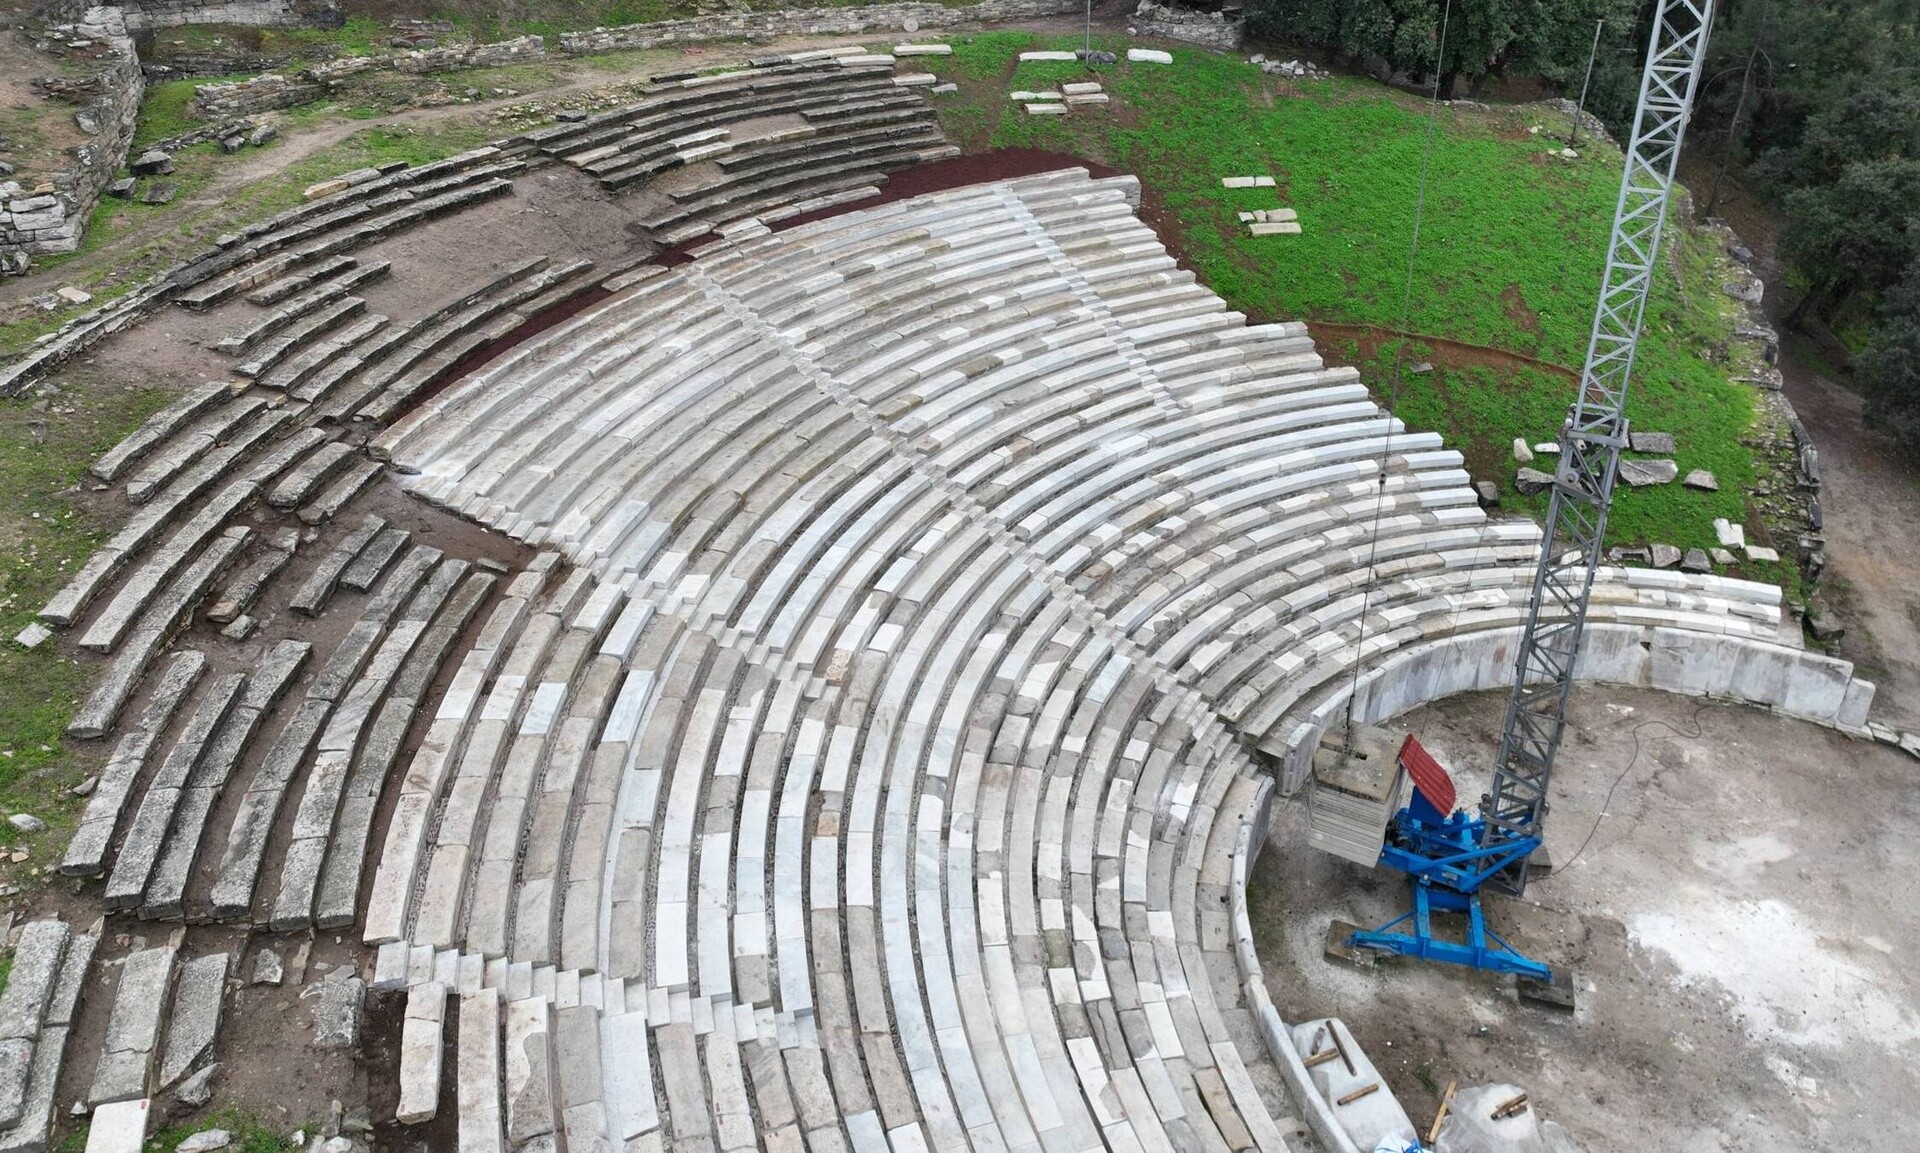 Θάσος: Το αρχαίο θέατρο της Θάσου αποκαταστάθηκε με το φημισμένο λευκό μάρμαρο του νησιού